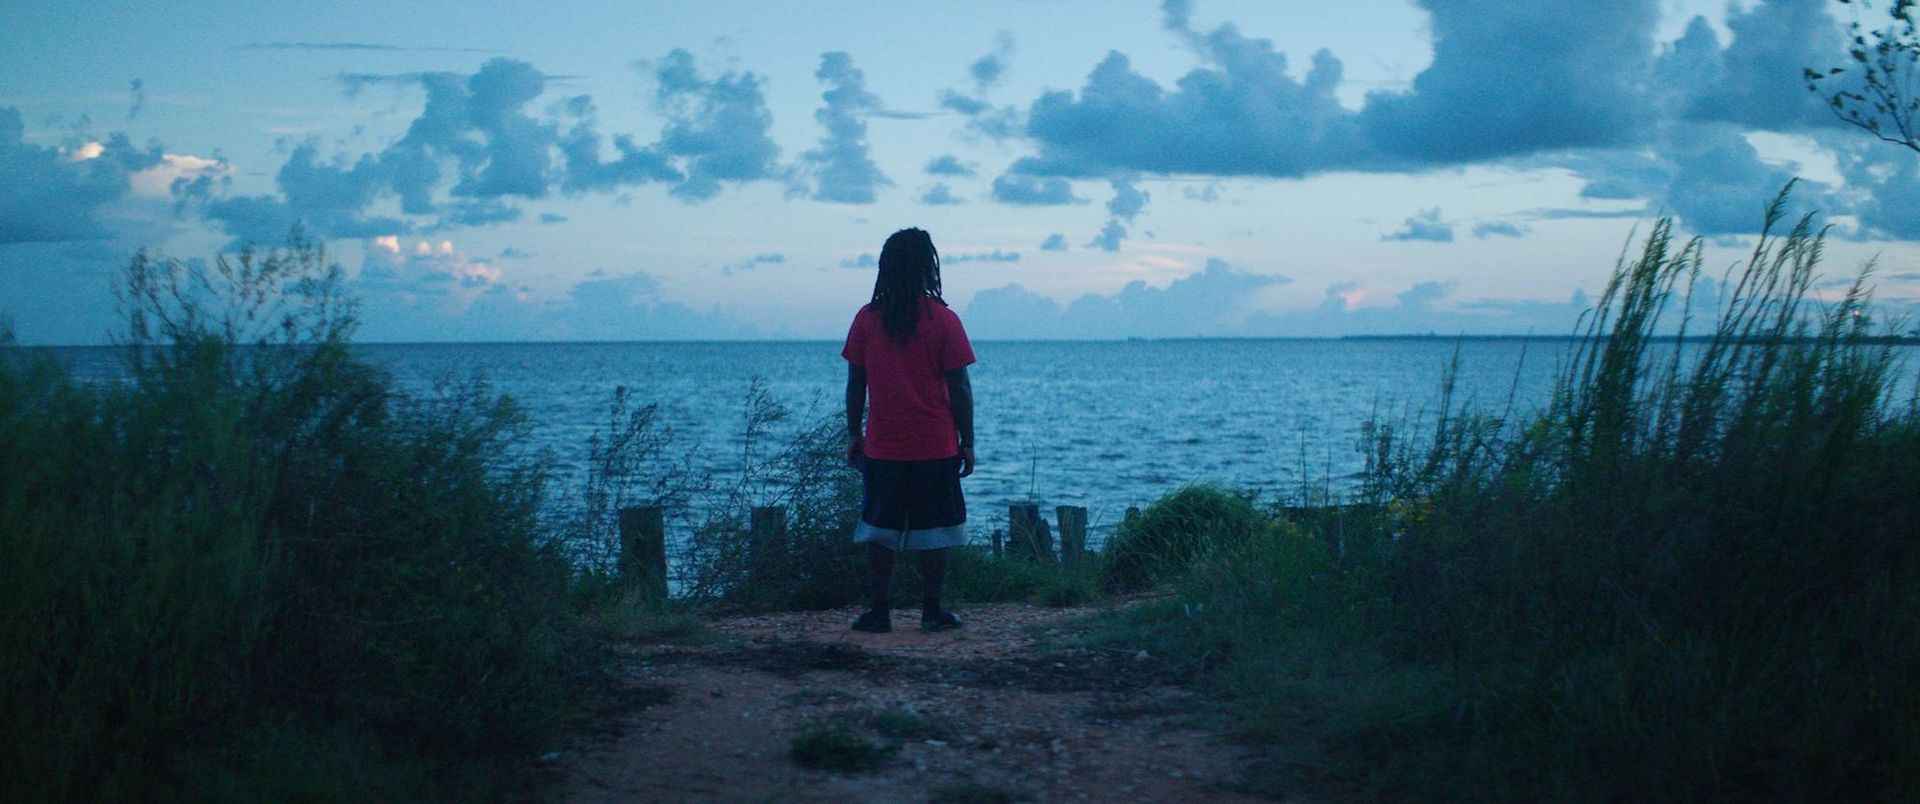 A scene from Descendant by Margaret Brown Courtesy Sundance Film Festival